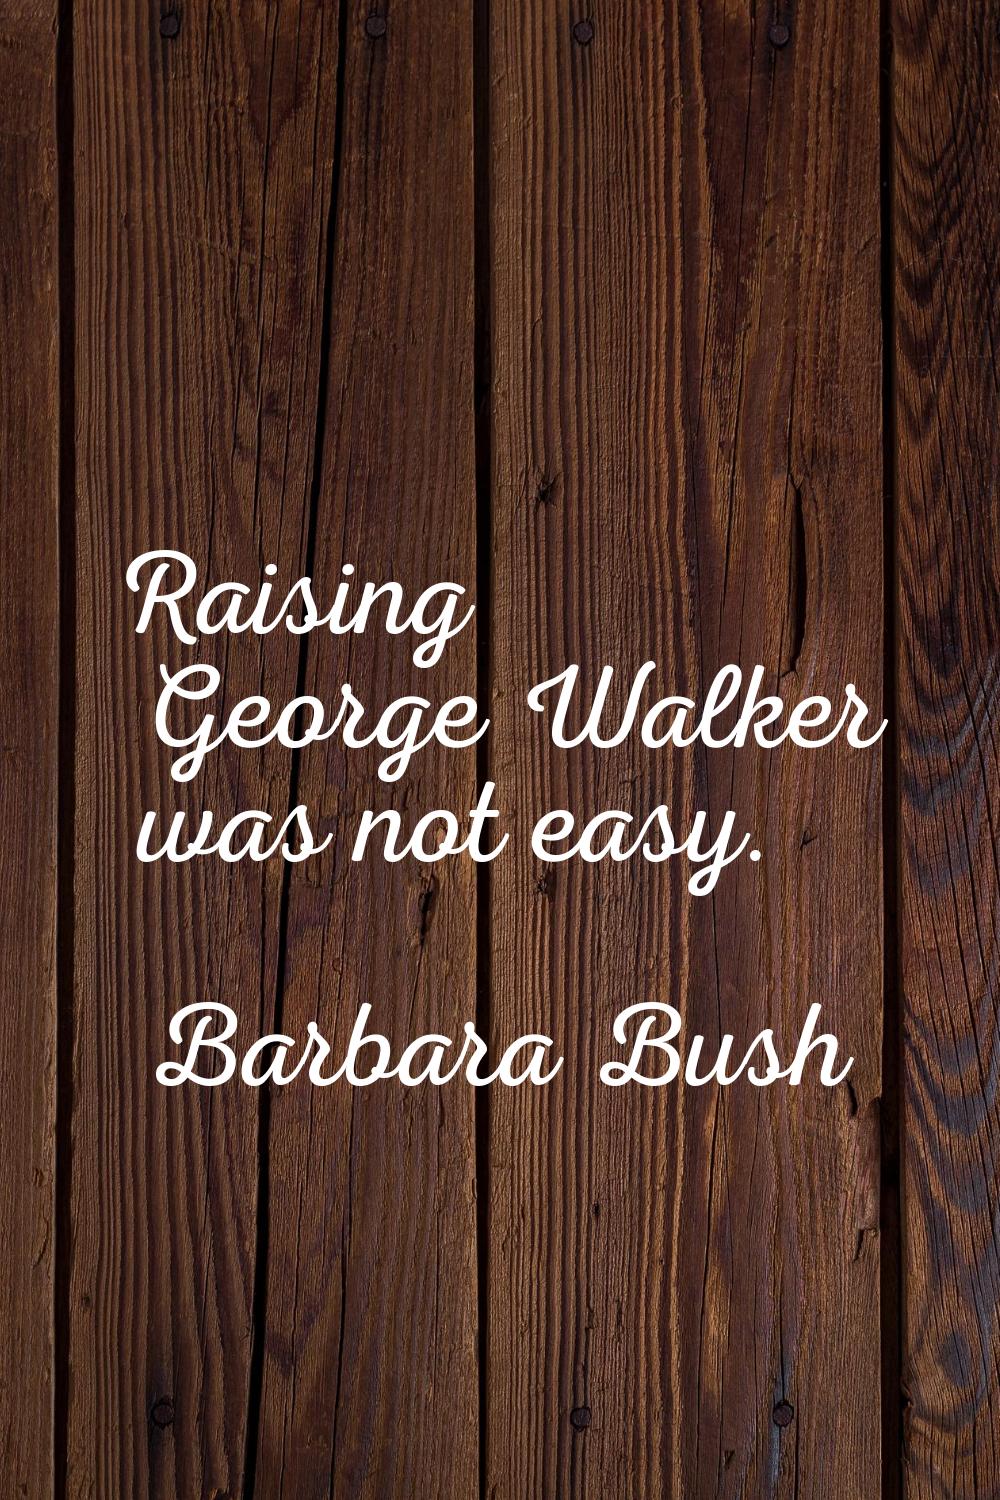 Raising George Walker was not easy.